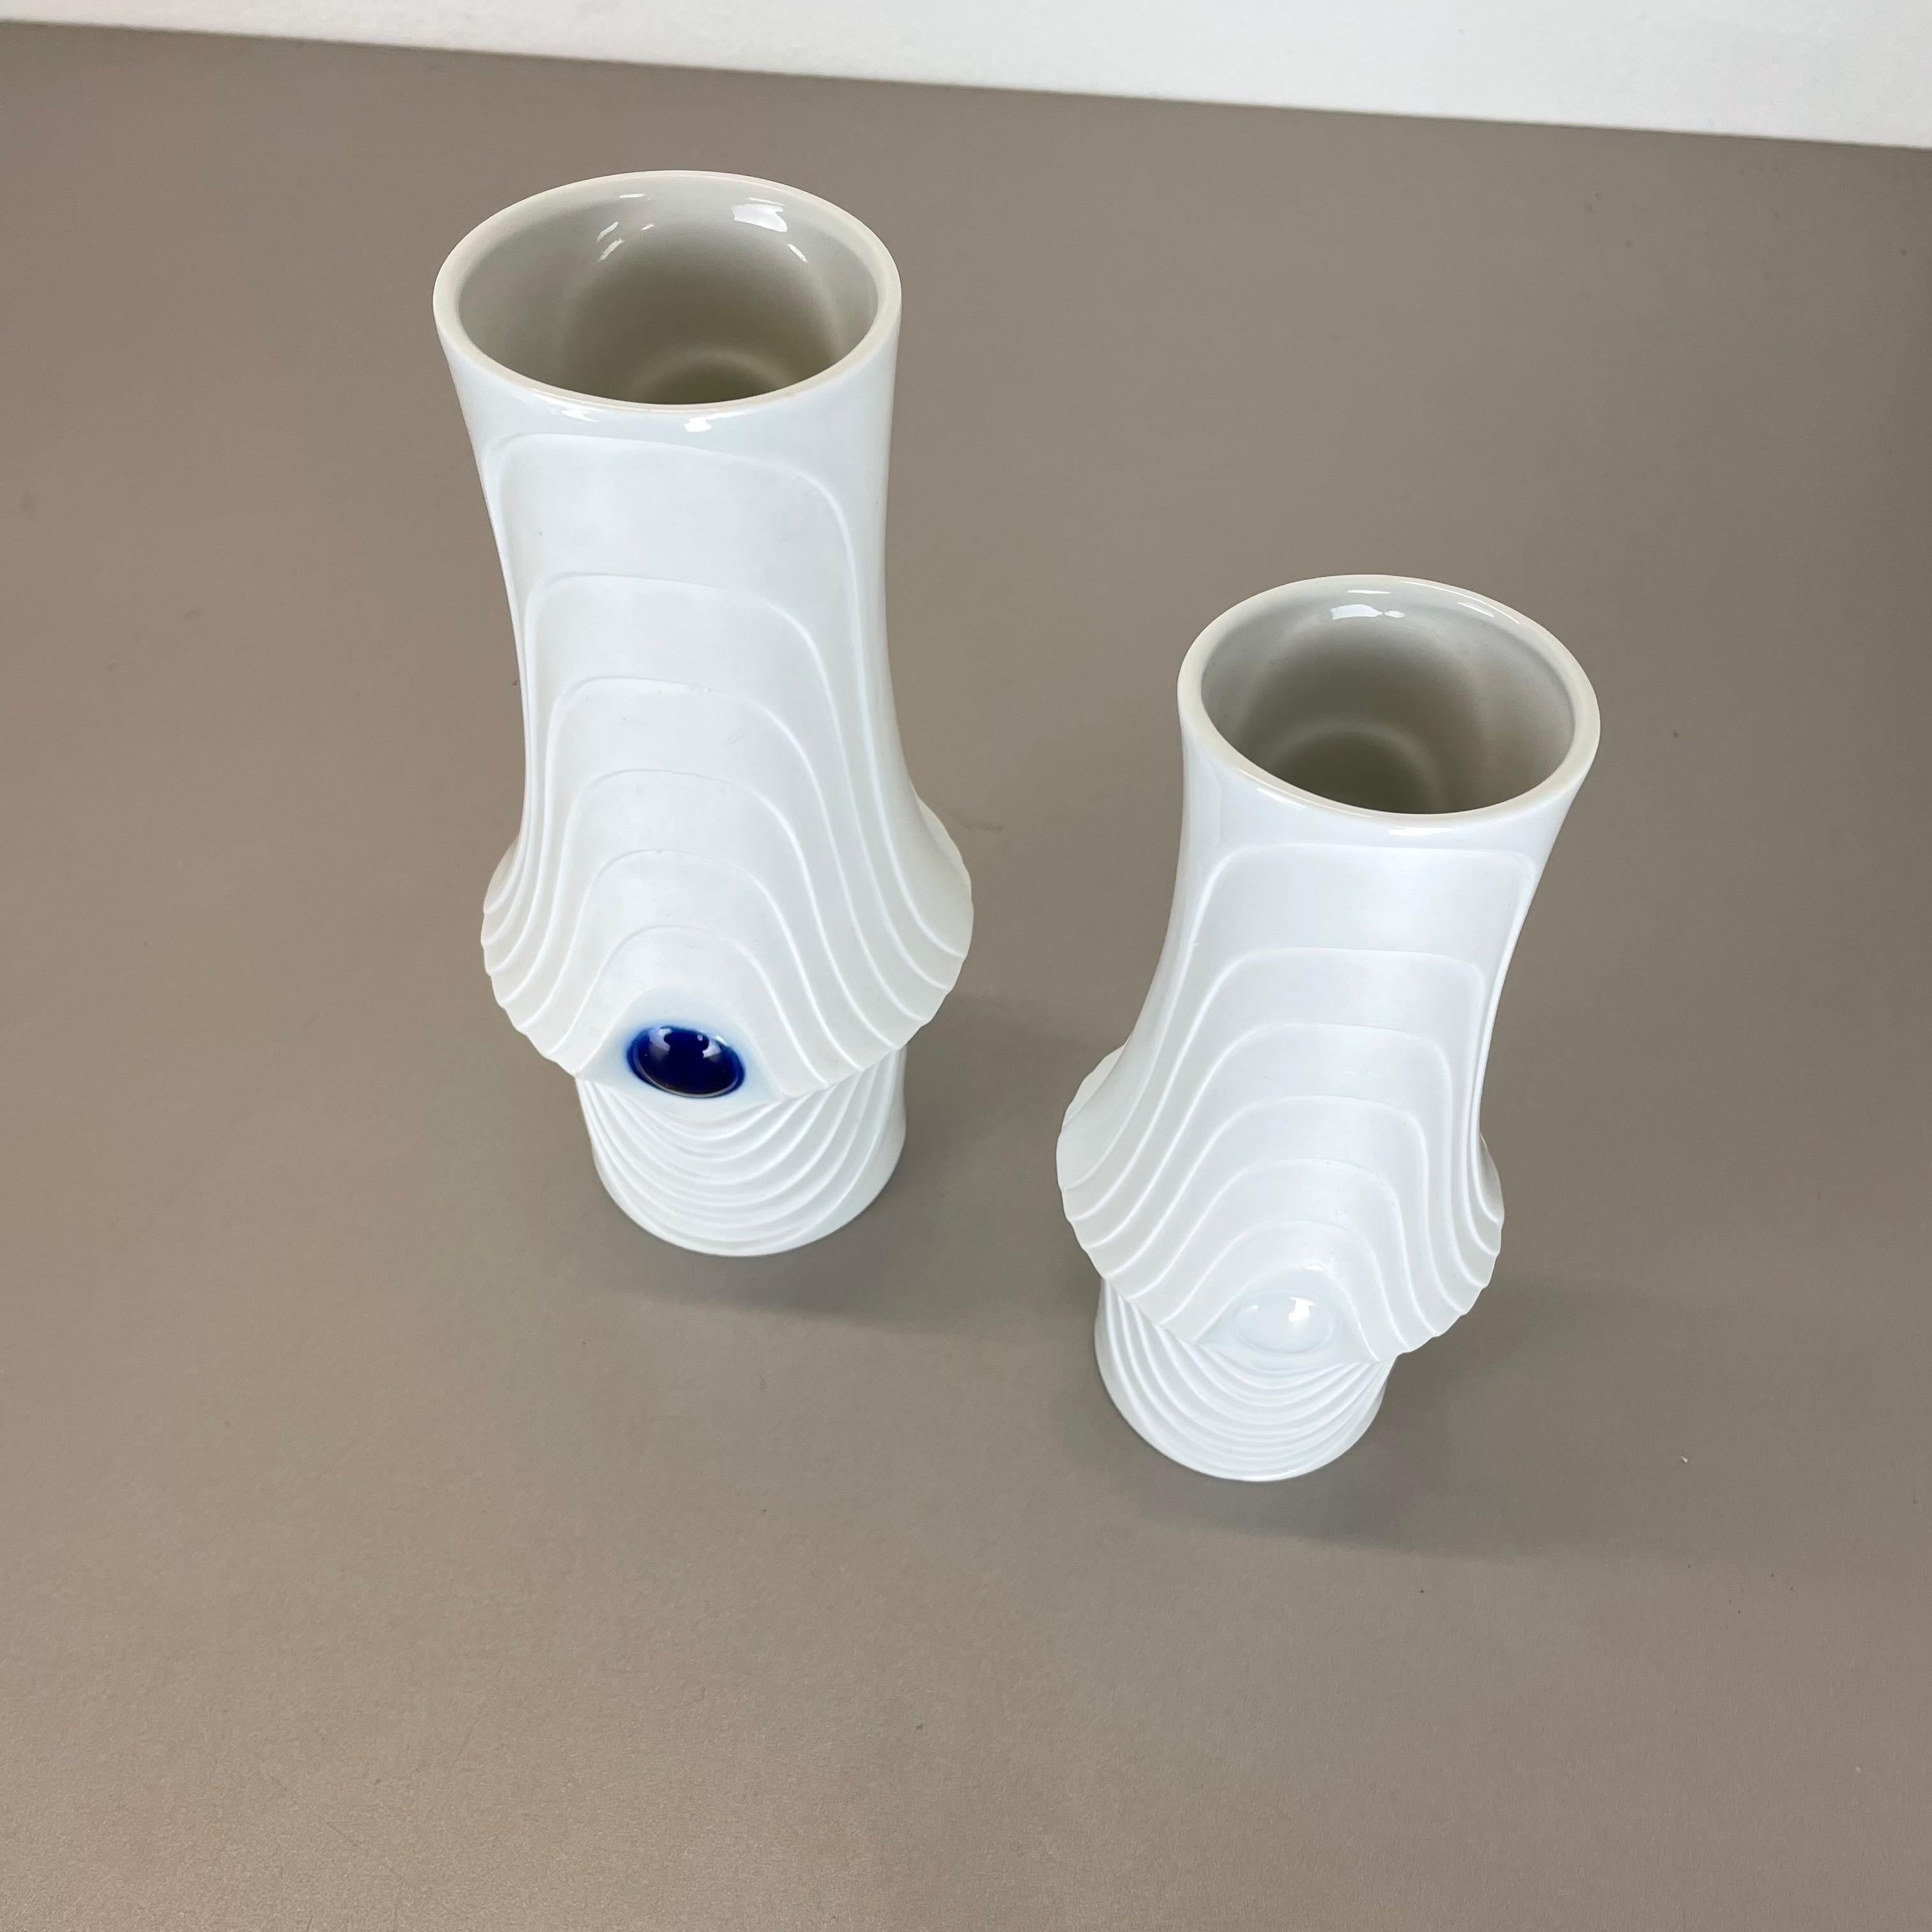 Set of 2 Original Porcelain Op Art Vase Made by Royal Bavaria KPM Germany, 1970s For Sale 5